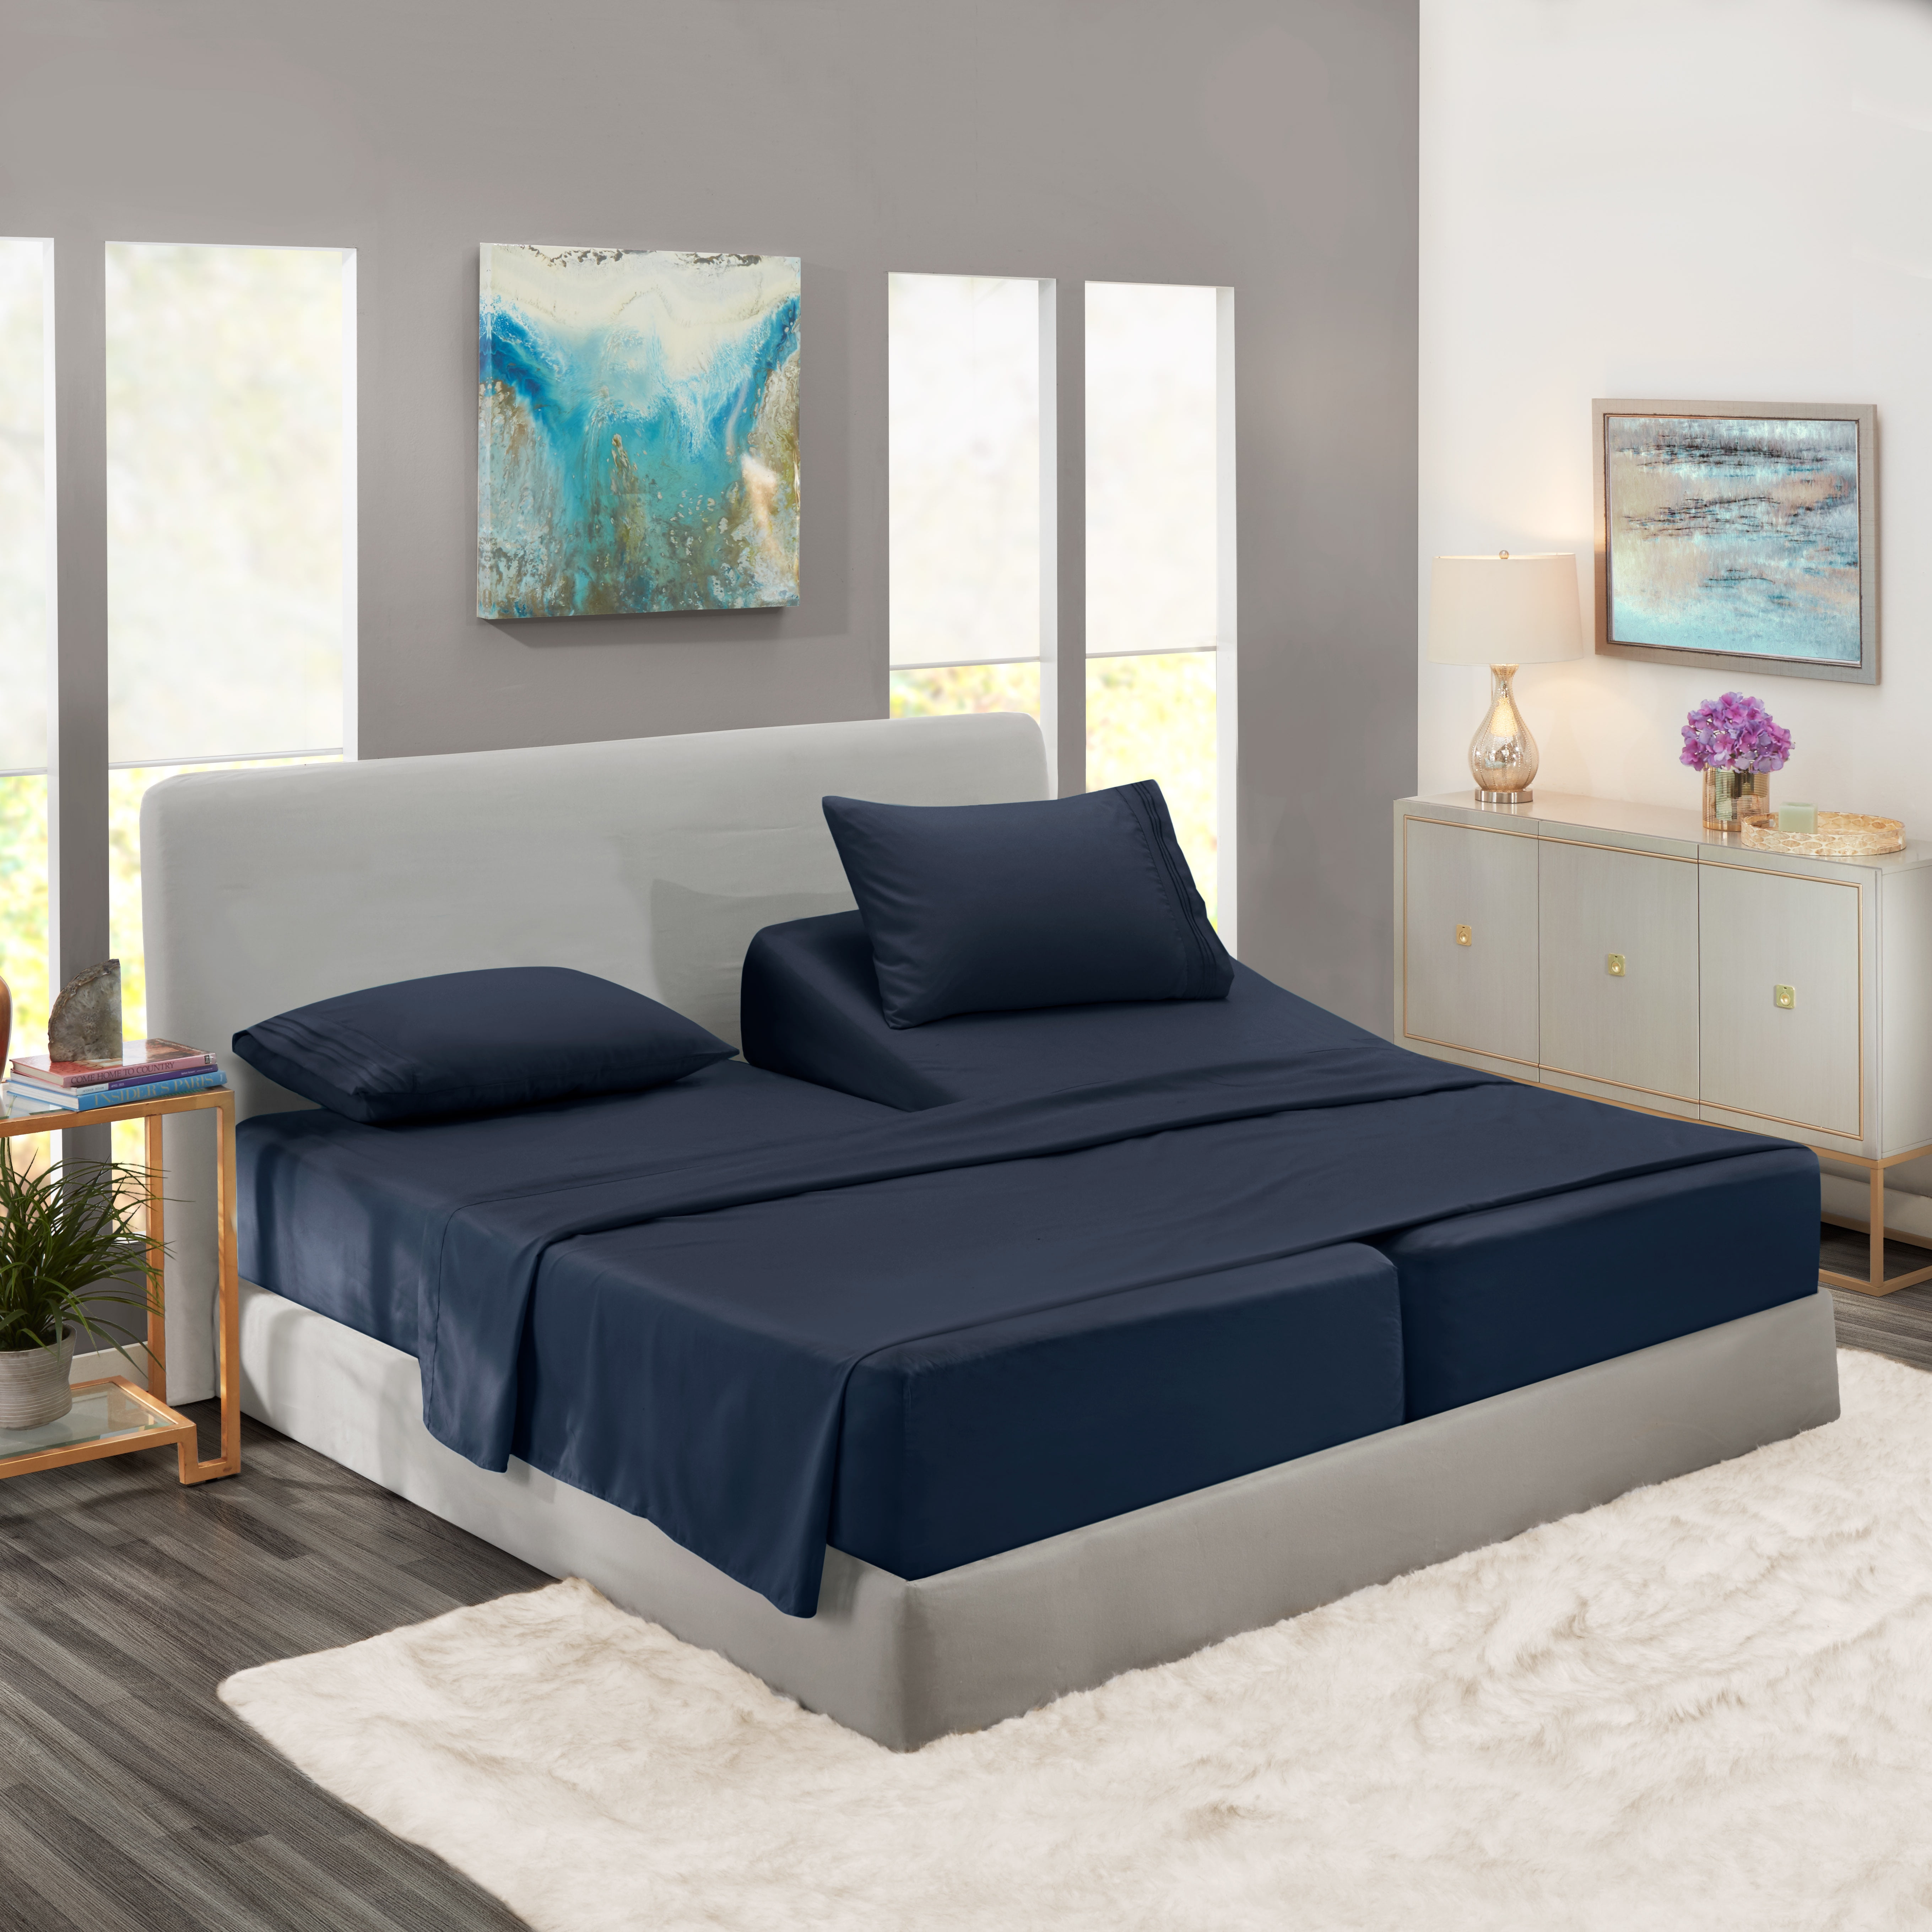 Clara Clark Split King Size Bed Sheets Set for Adjustable Beds